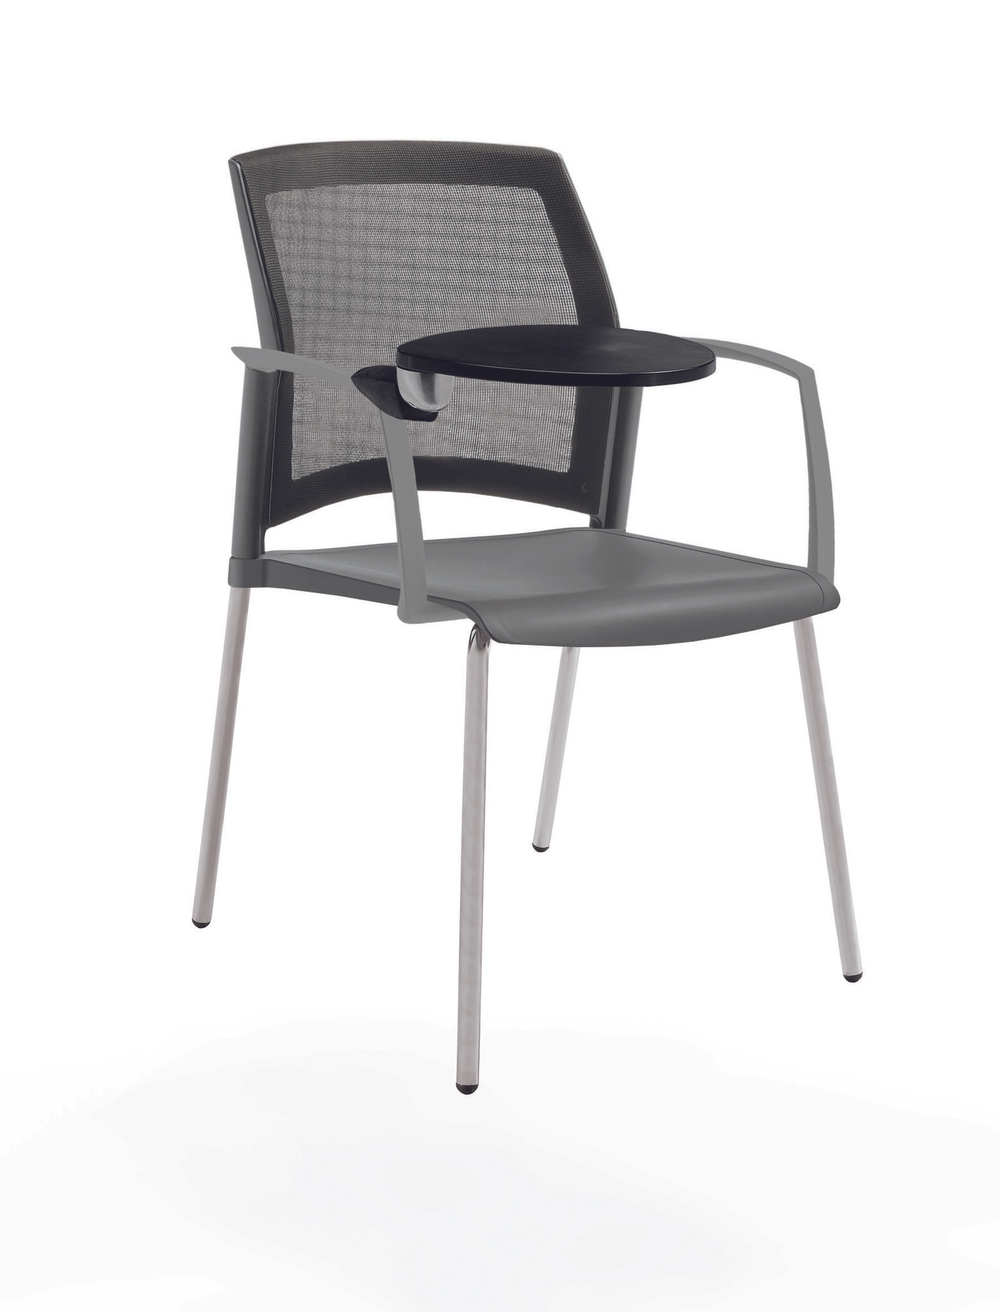 стул Rewind на 4 ногах, каркас серыйй, пластик серый, спинка-сетка, с закрытыми подлокотниками и пюпитром